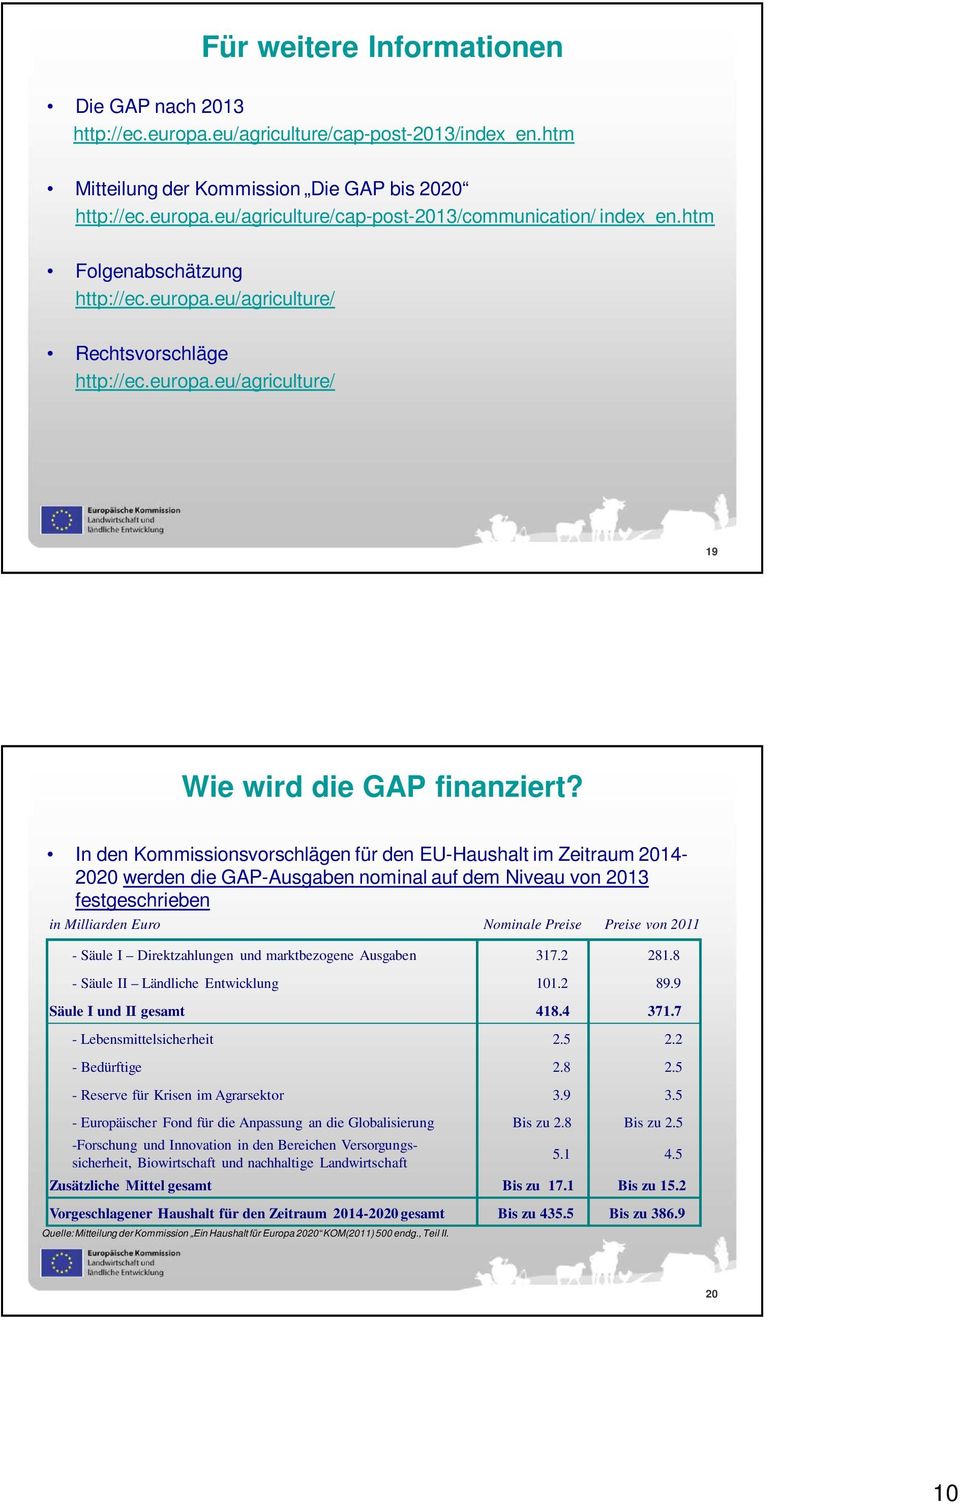 In den Kommissionsvorschlägen für den EU-Haushalt im Zeitraum 2014-2020 werden die GAP-Ausgaben nominal auf dem Niveau von 2013 festgeschrieben in Milliarden Euro Nominale Preise Preise von 2011 -